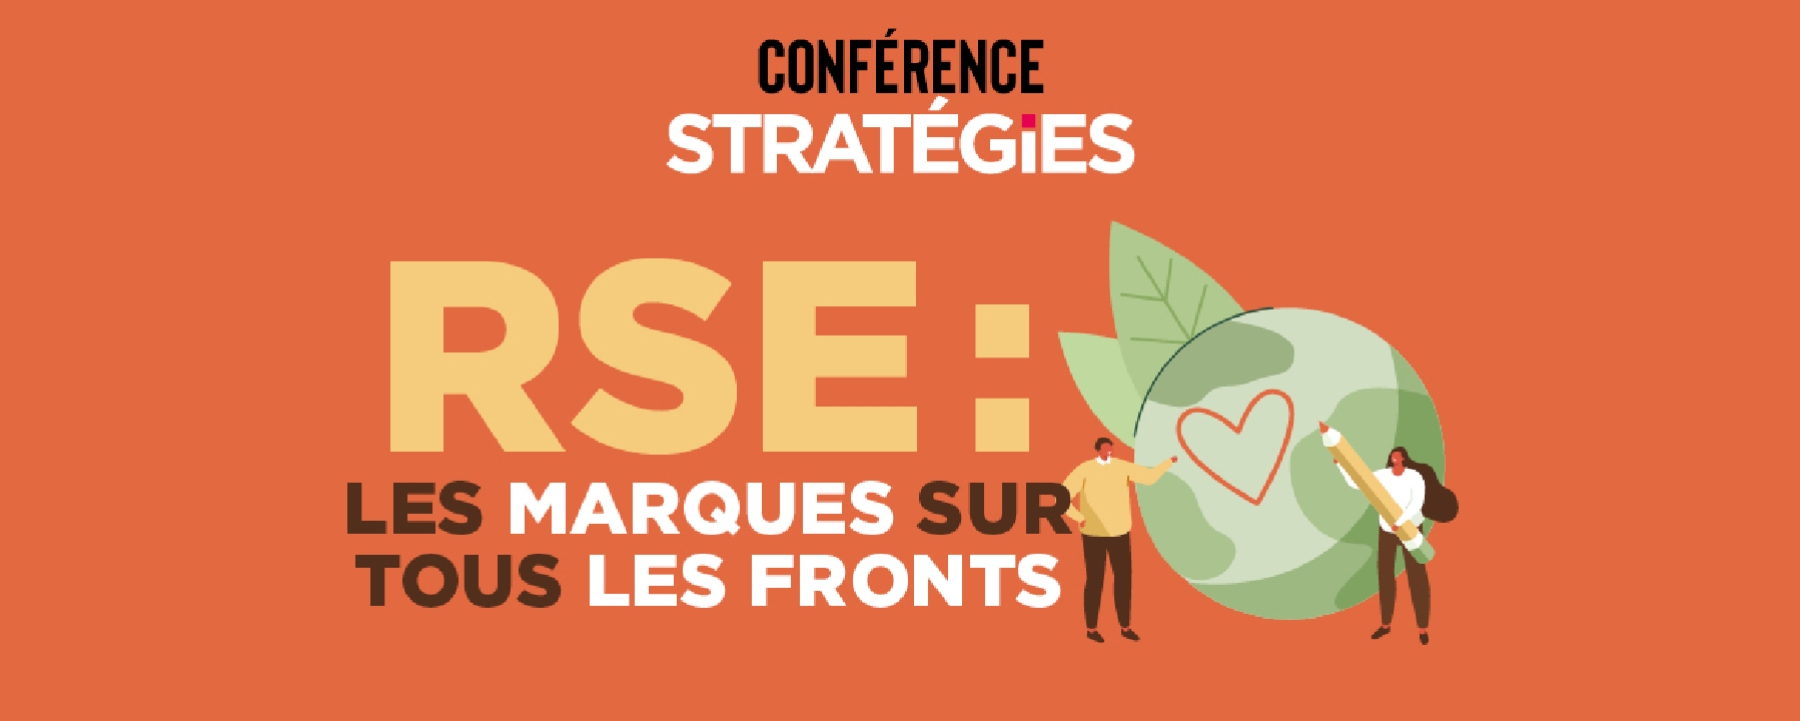 Conférence Stratégies RSE : Les marques sur tous les fronts